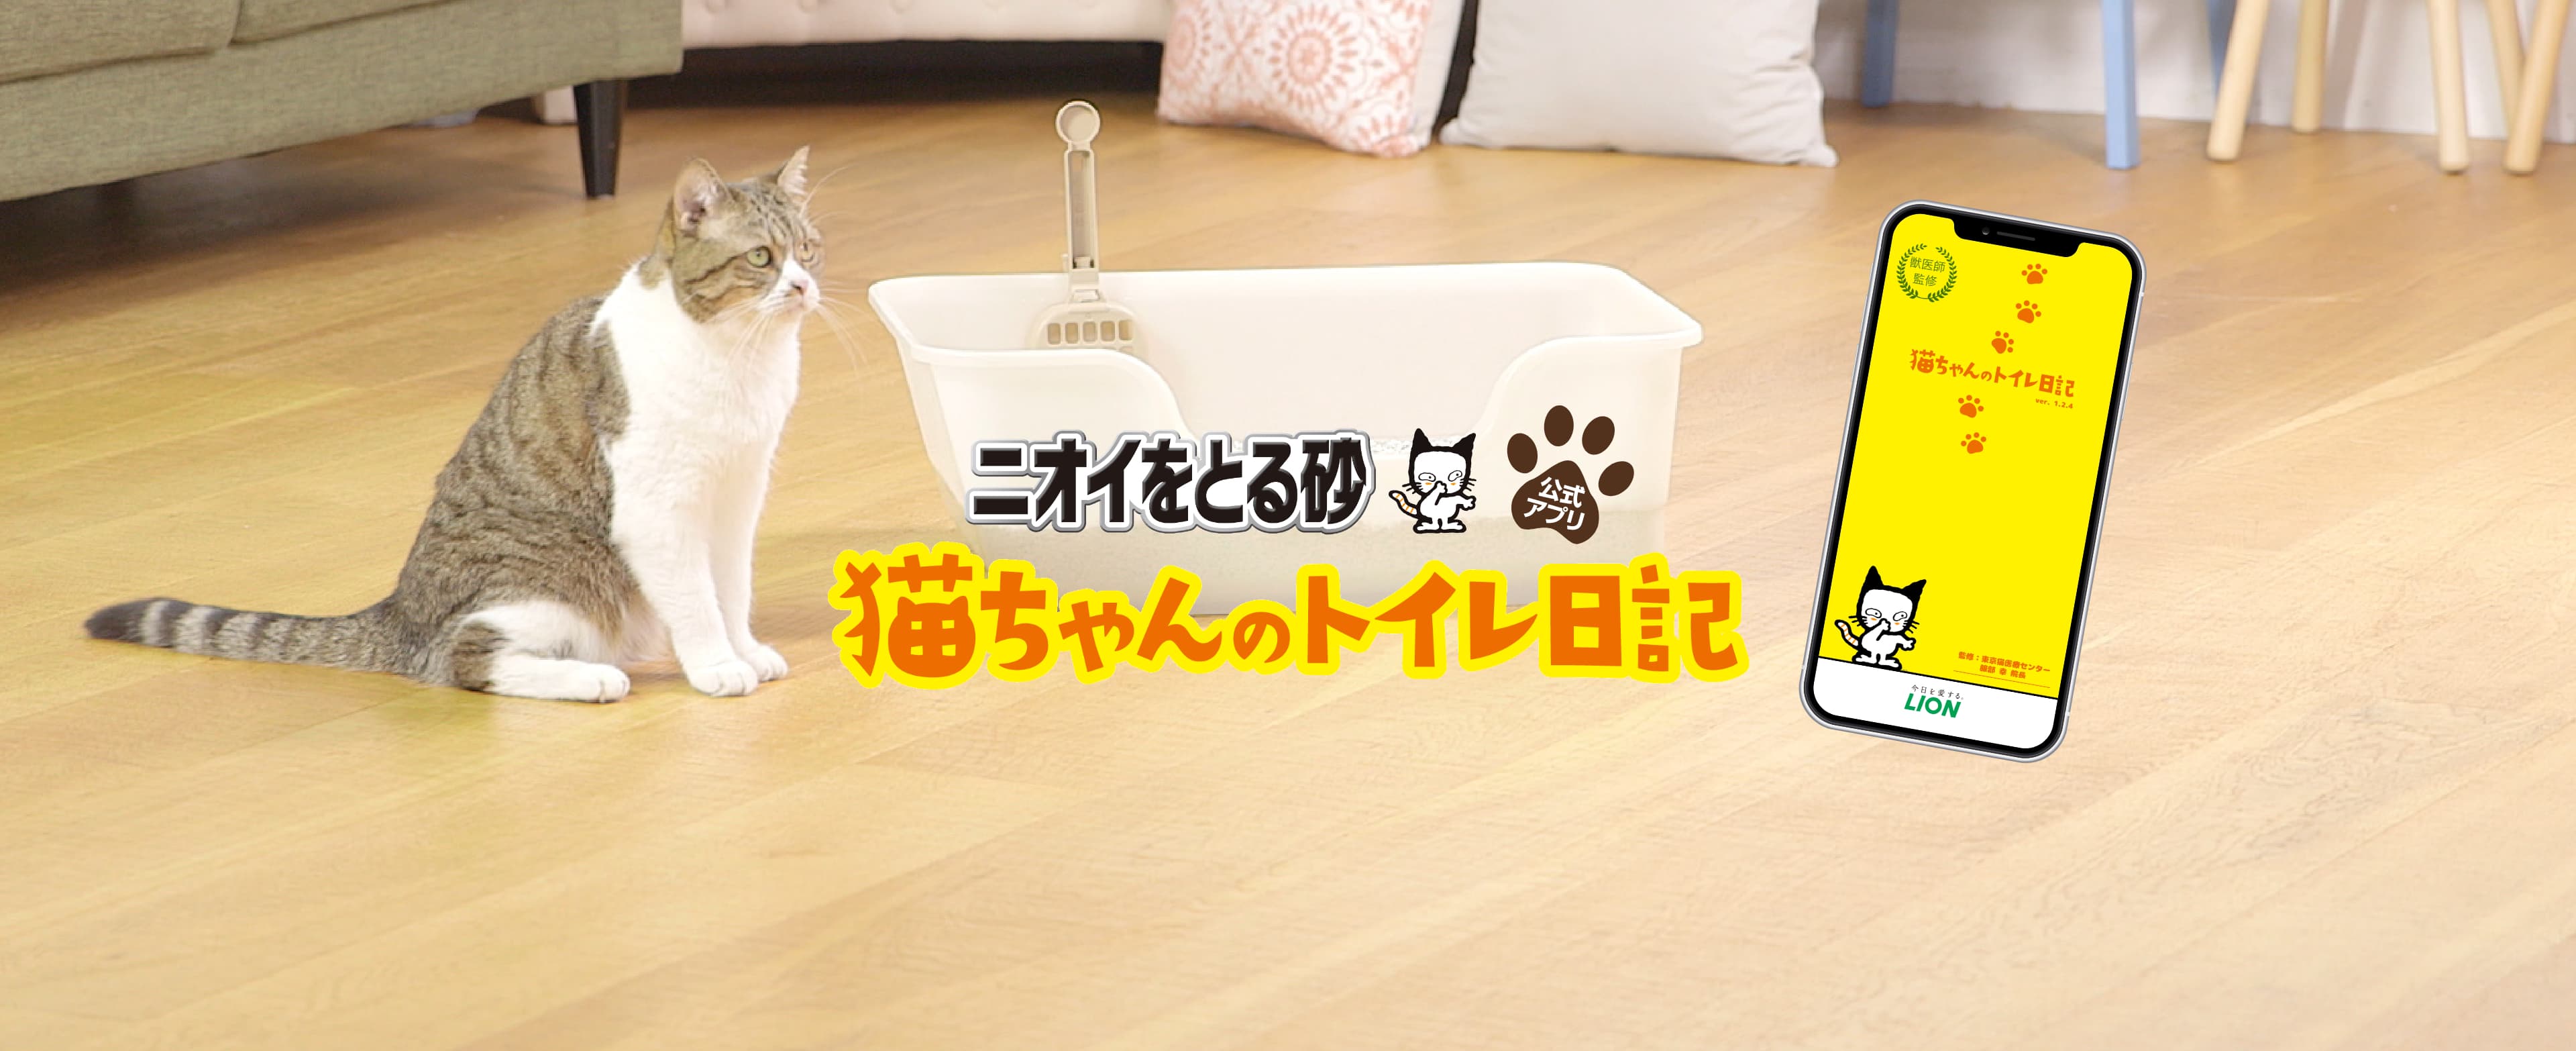 ニオイをとる砂 ニオイをとる砂公式アプリ 猫ちゃんのトイレ日記 猫砂で毎日オシッコチェック ライオン商事株式会社